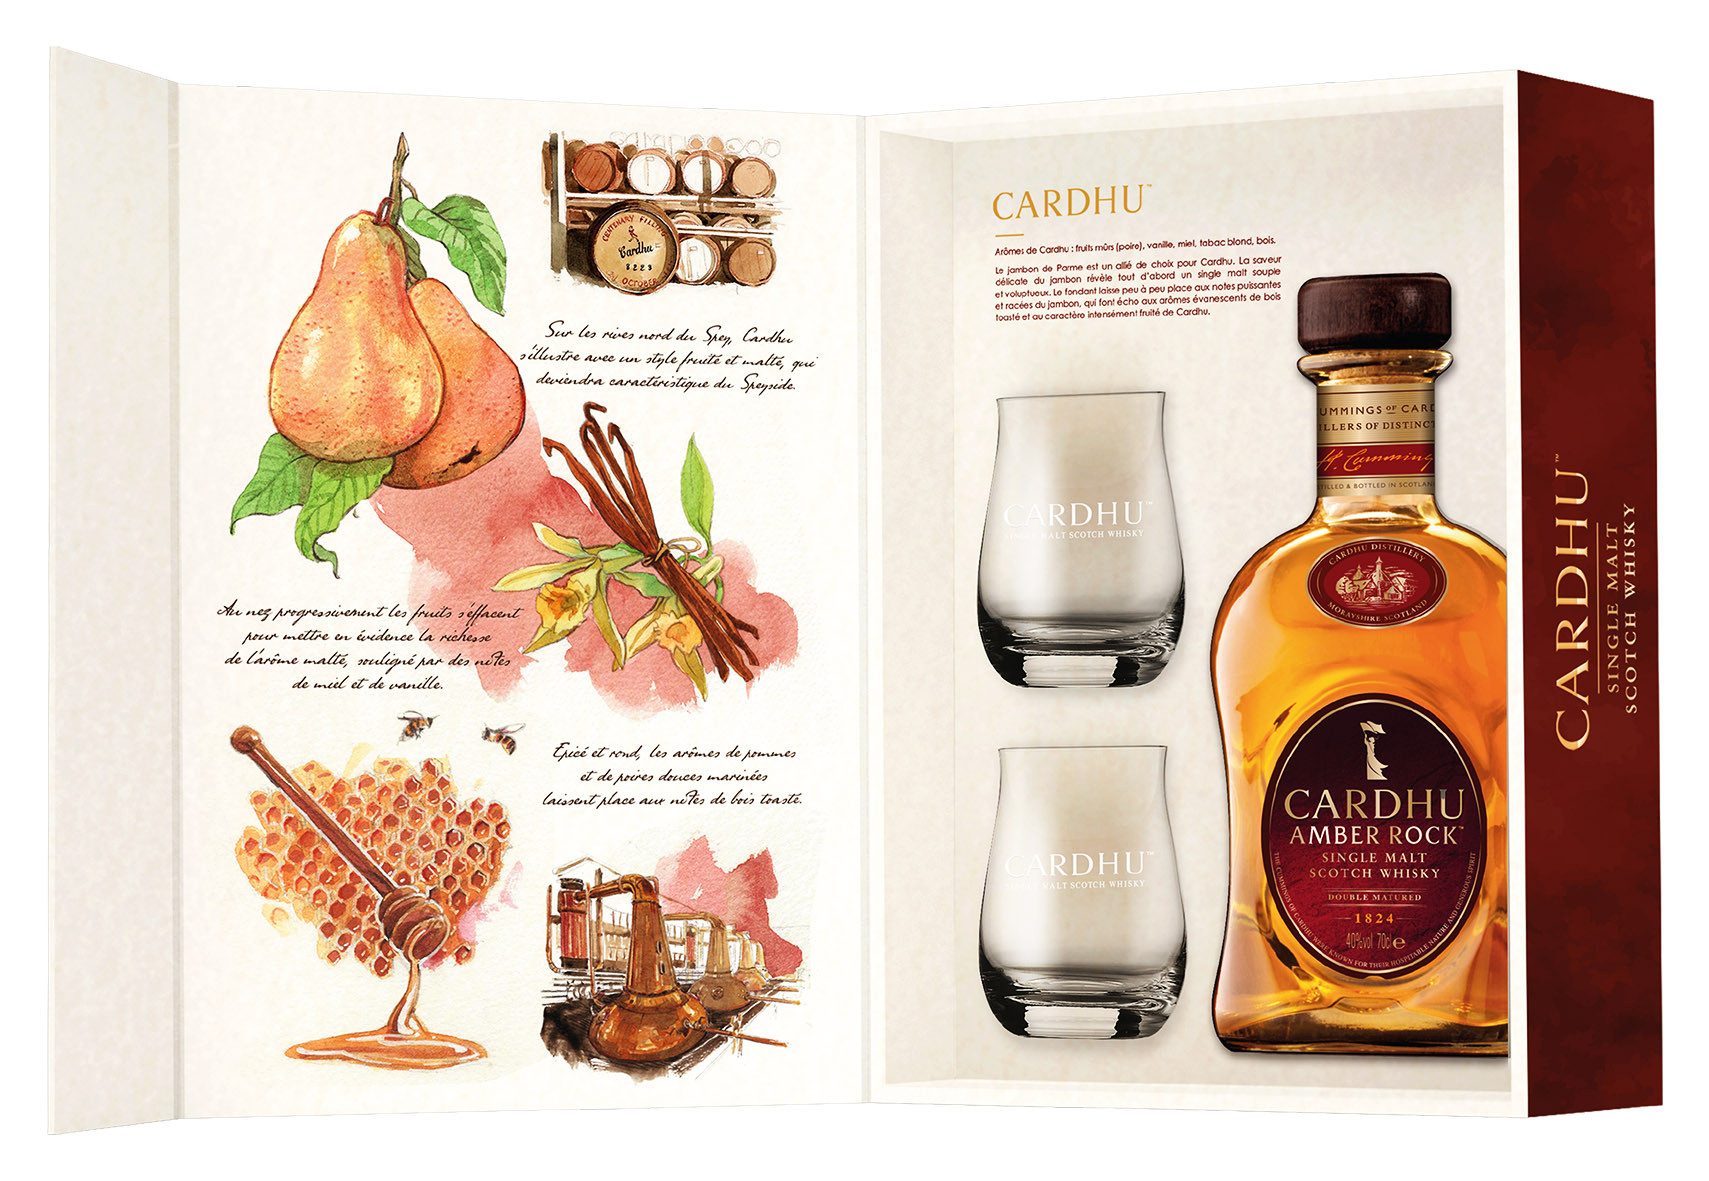 Achat de Whisky Cardhu Amber Rock 70cl vendu en Coffret Saveurs d'écosse 2  verres sur notre site - Odyssee-vins